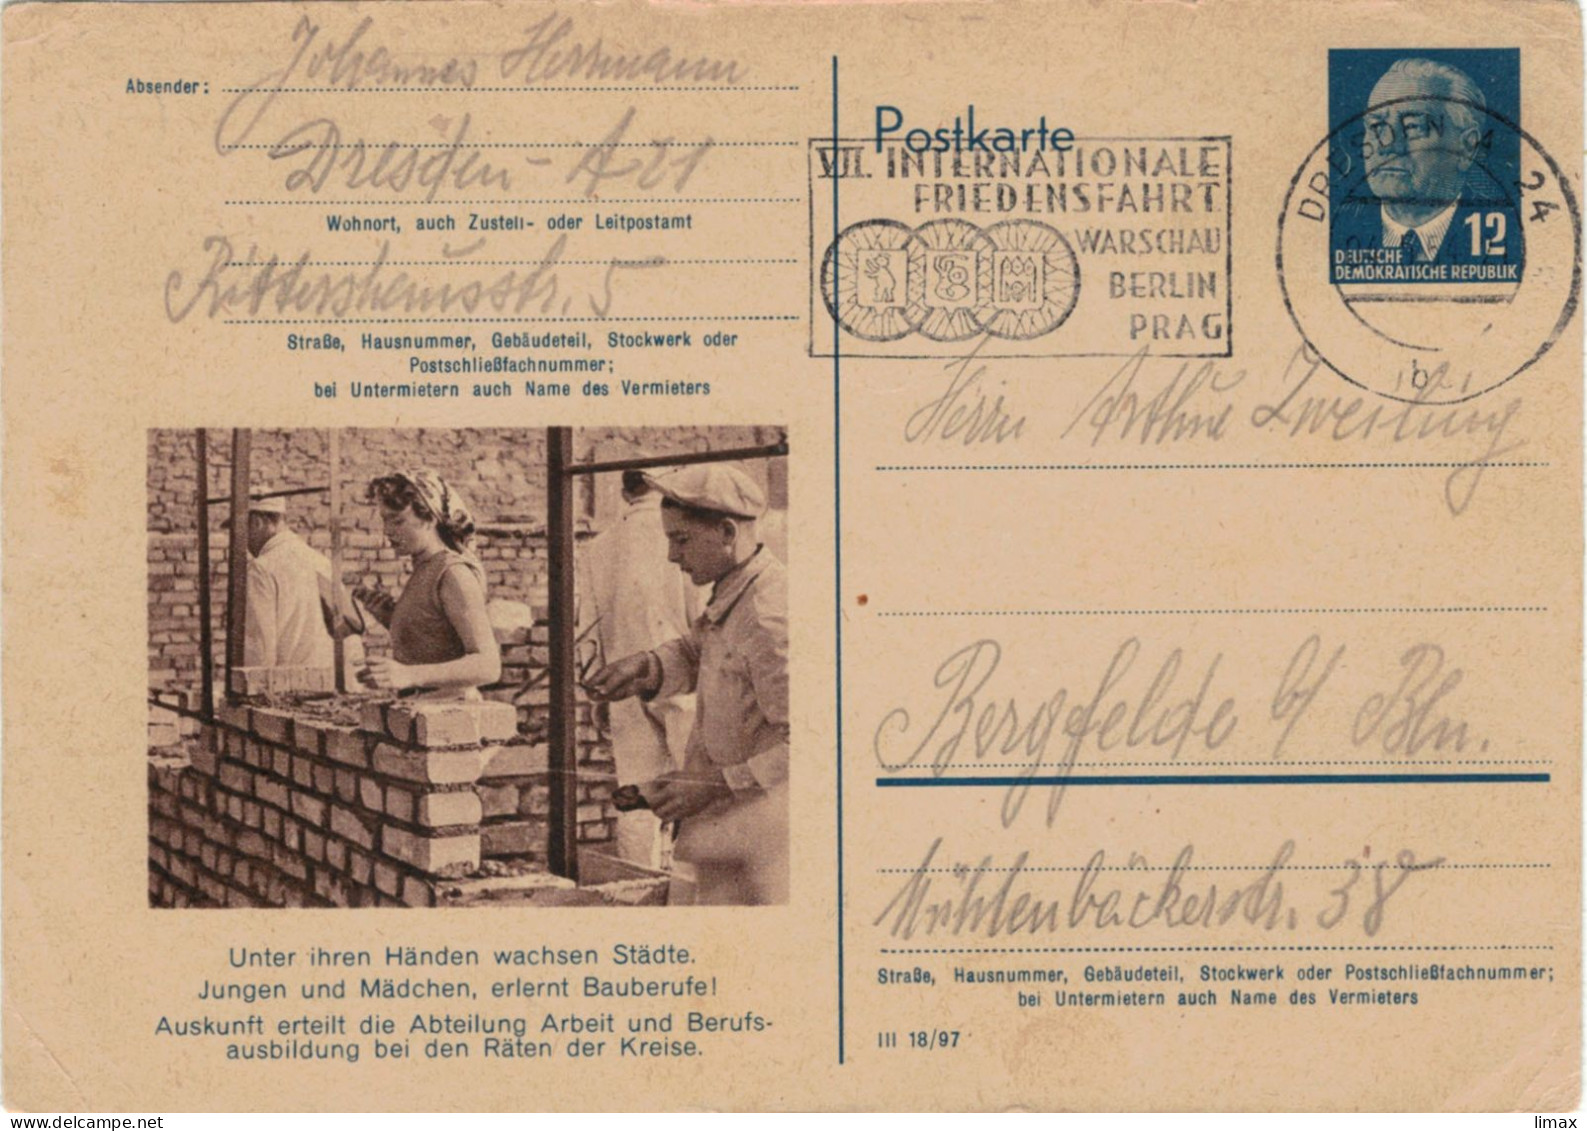 Niemand Hat Die Absicht, Eine Mauer Zu Errichten! - Berlin 1954 - Ganzsache Ziegel Maurer Mörtel DDR Pieck Friedensfahrt - Postkarten - Gebraucht